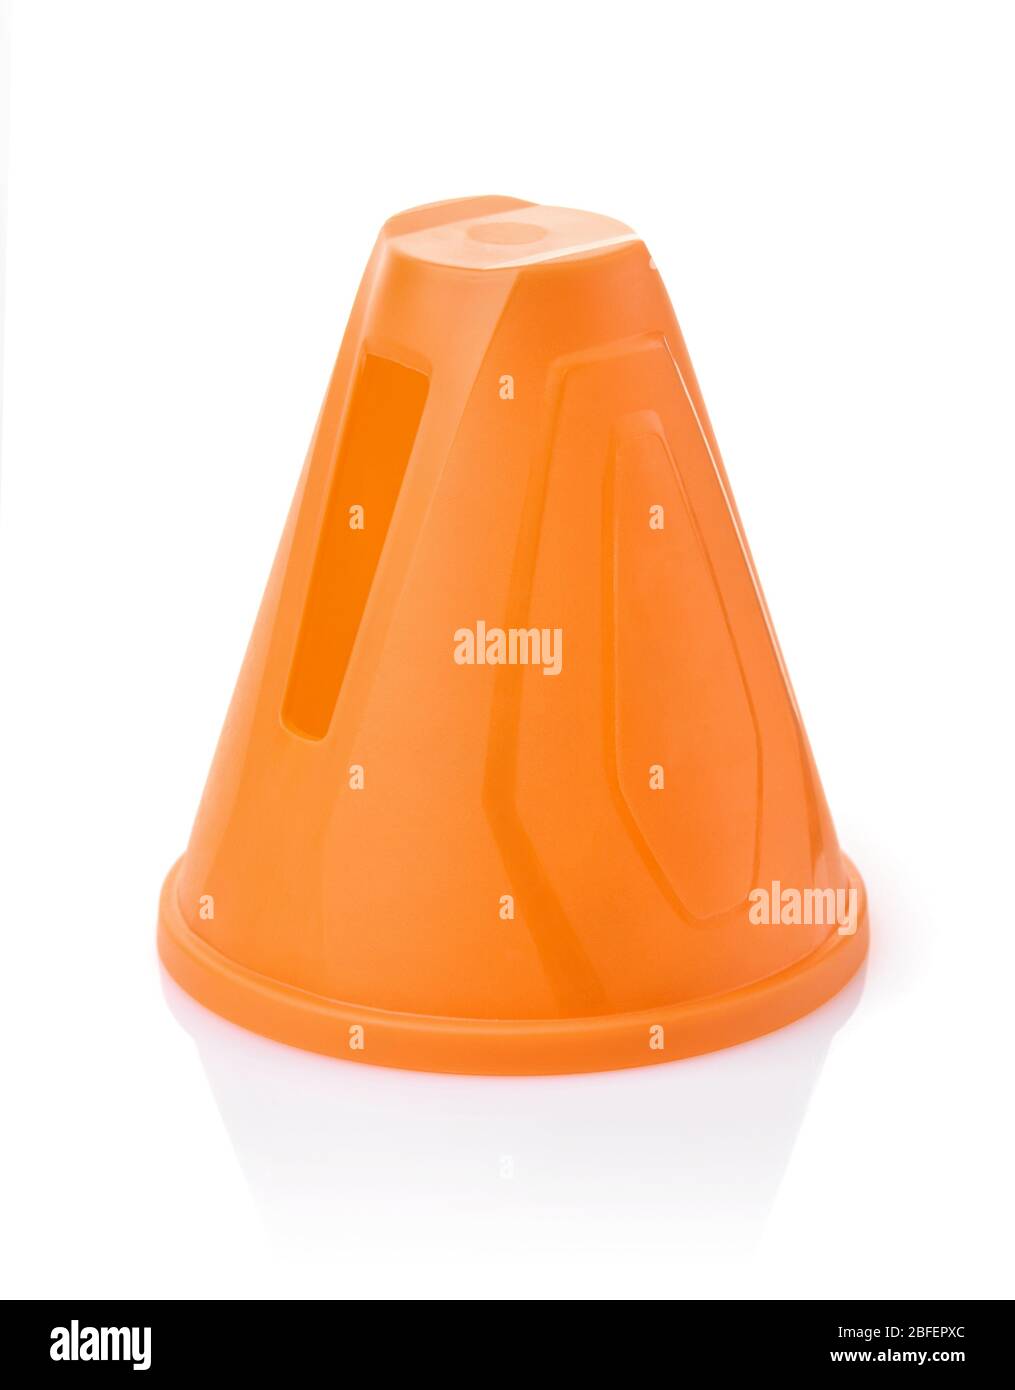 Plastic orange slalom cone isolated on white Stock Photo